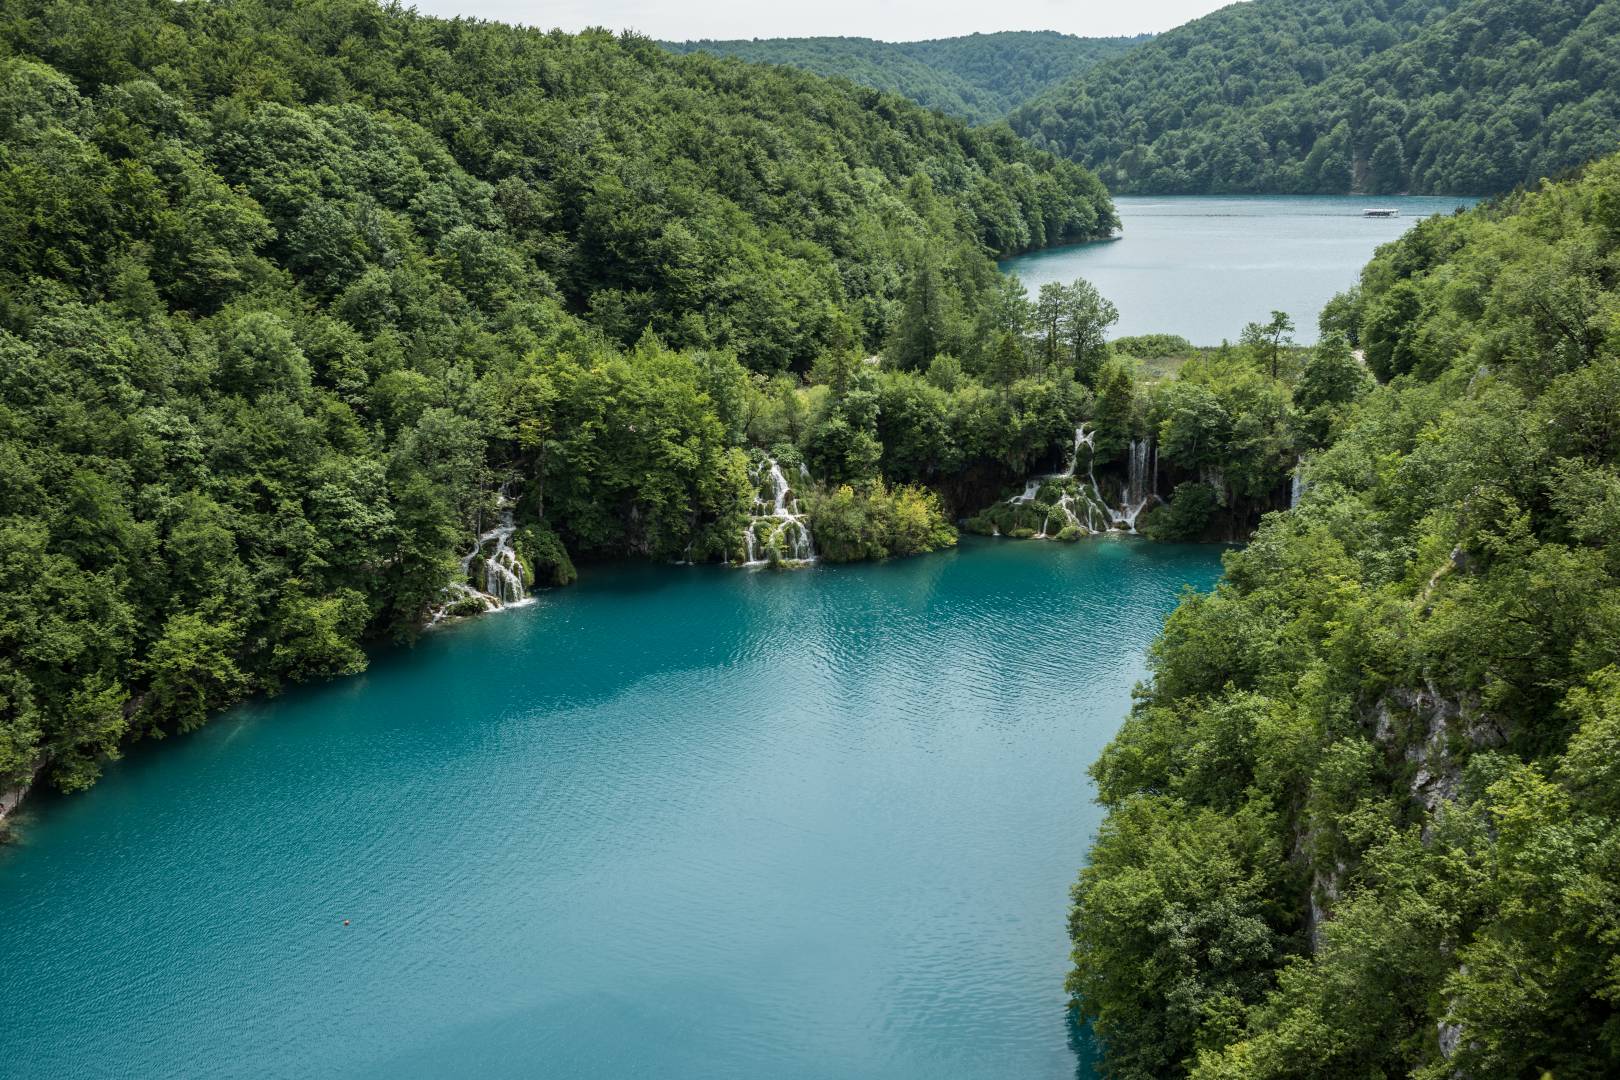 01 50+ shades of green. Plitvice lakes, Croatia. Summarit-M 35/2.4 1/400 sec, f/5.6, ISO 100 - Leica SL (Image ©Jörg-Peter Rau)